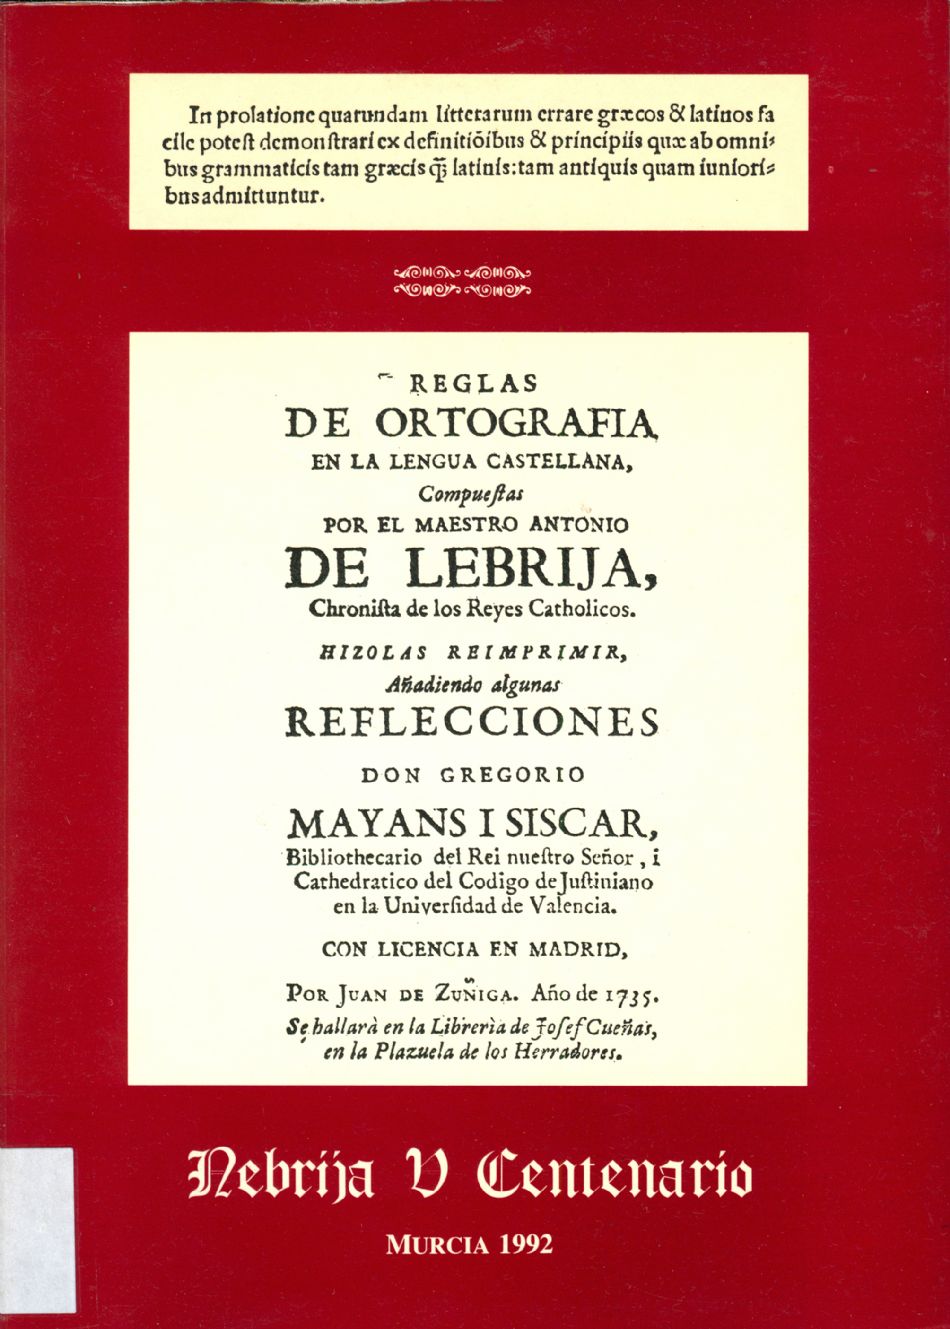 Reglas de orthographia en la Lengua castellana “Nebrija V Centenario”